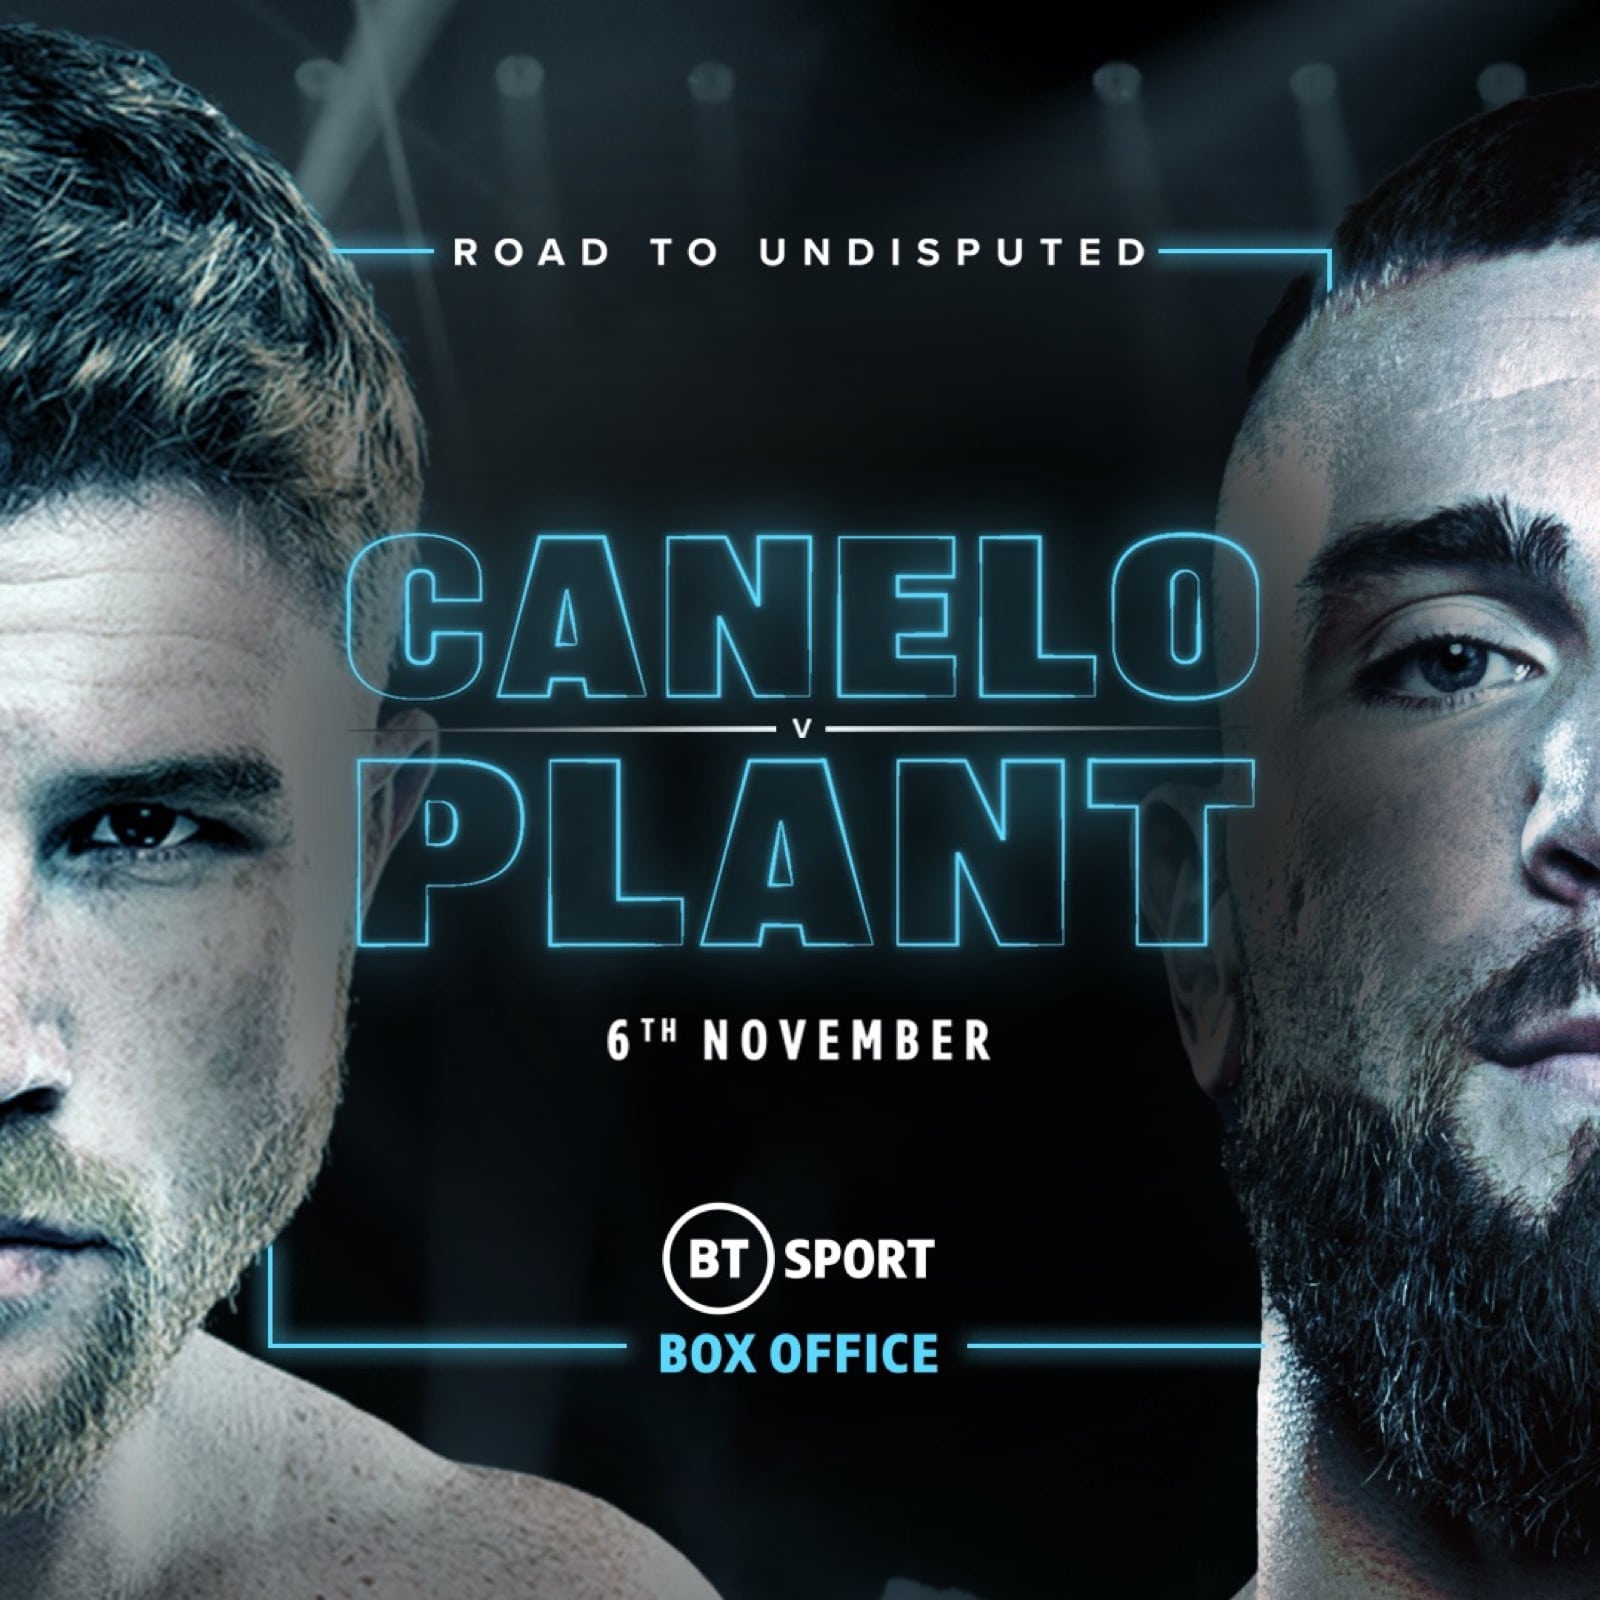 Caleb Plant, Canelo Alvarez boxing image / photo